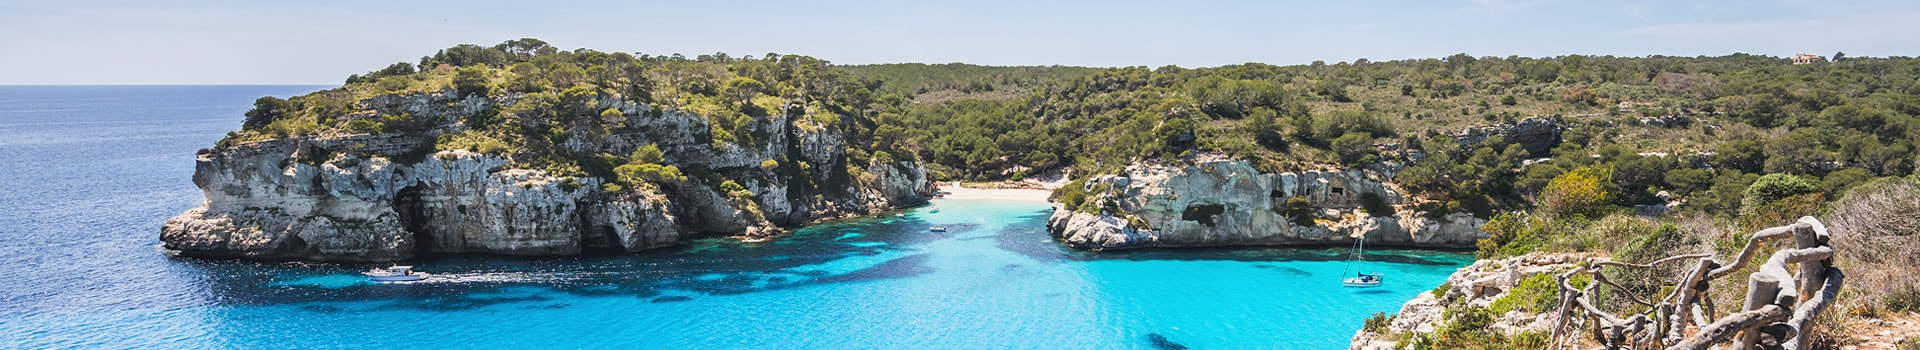 Ibiza - Menorca